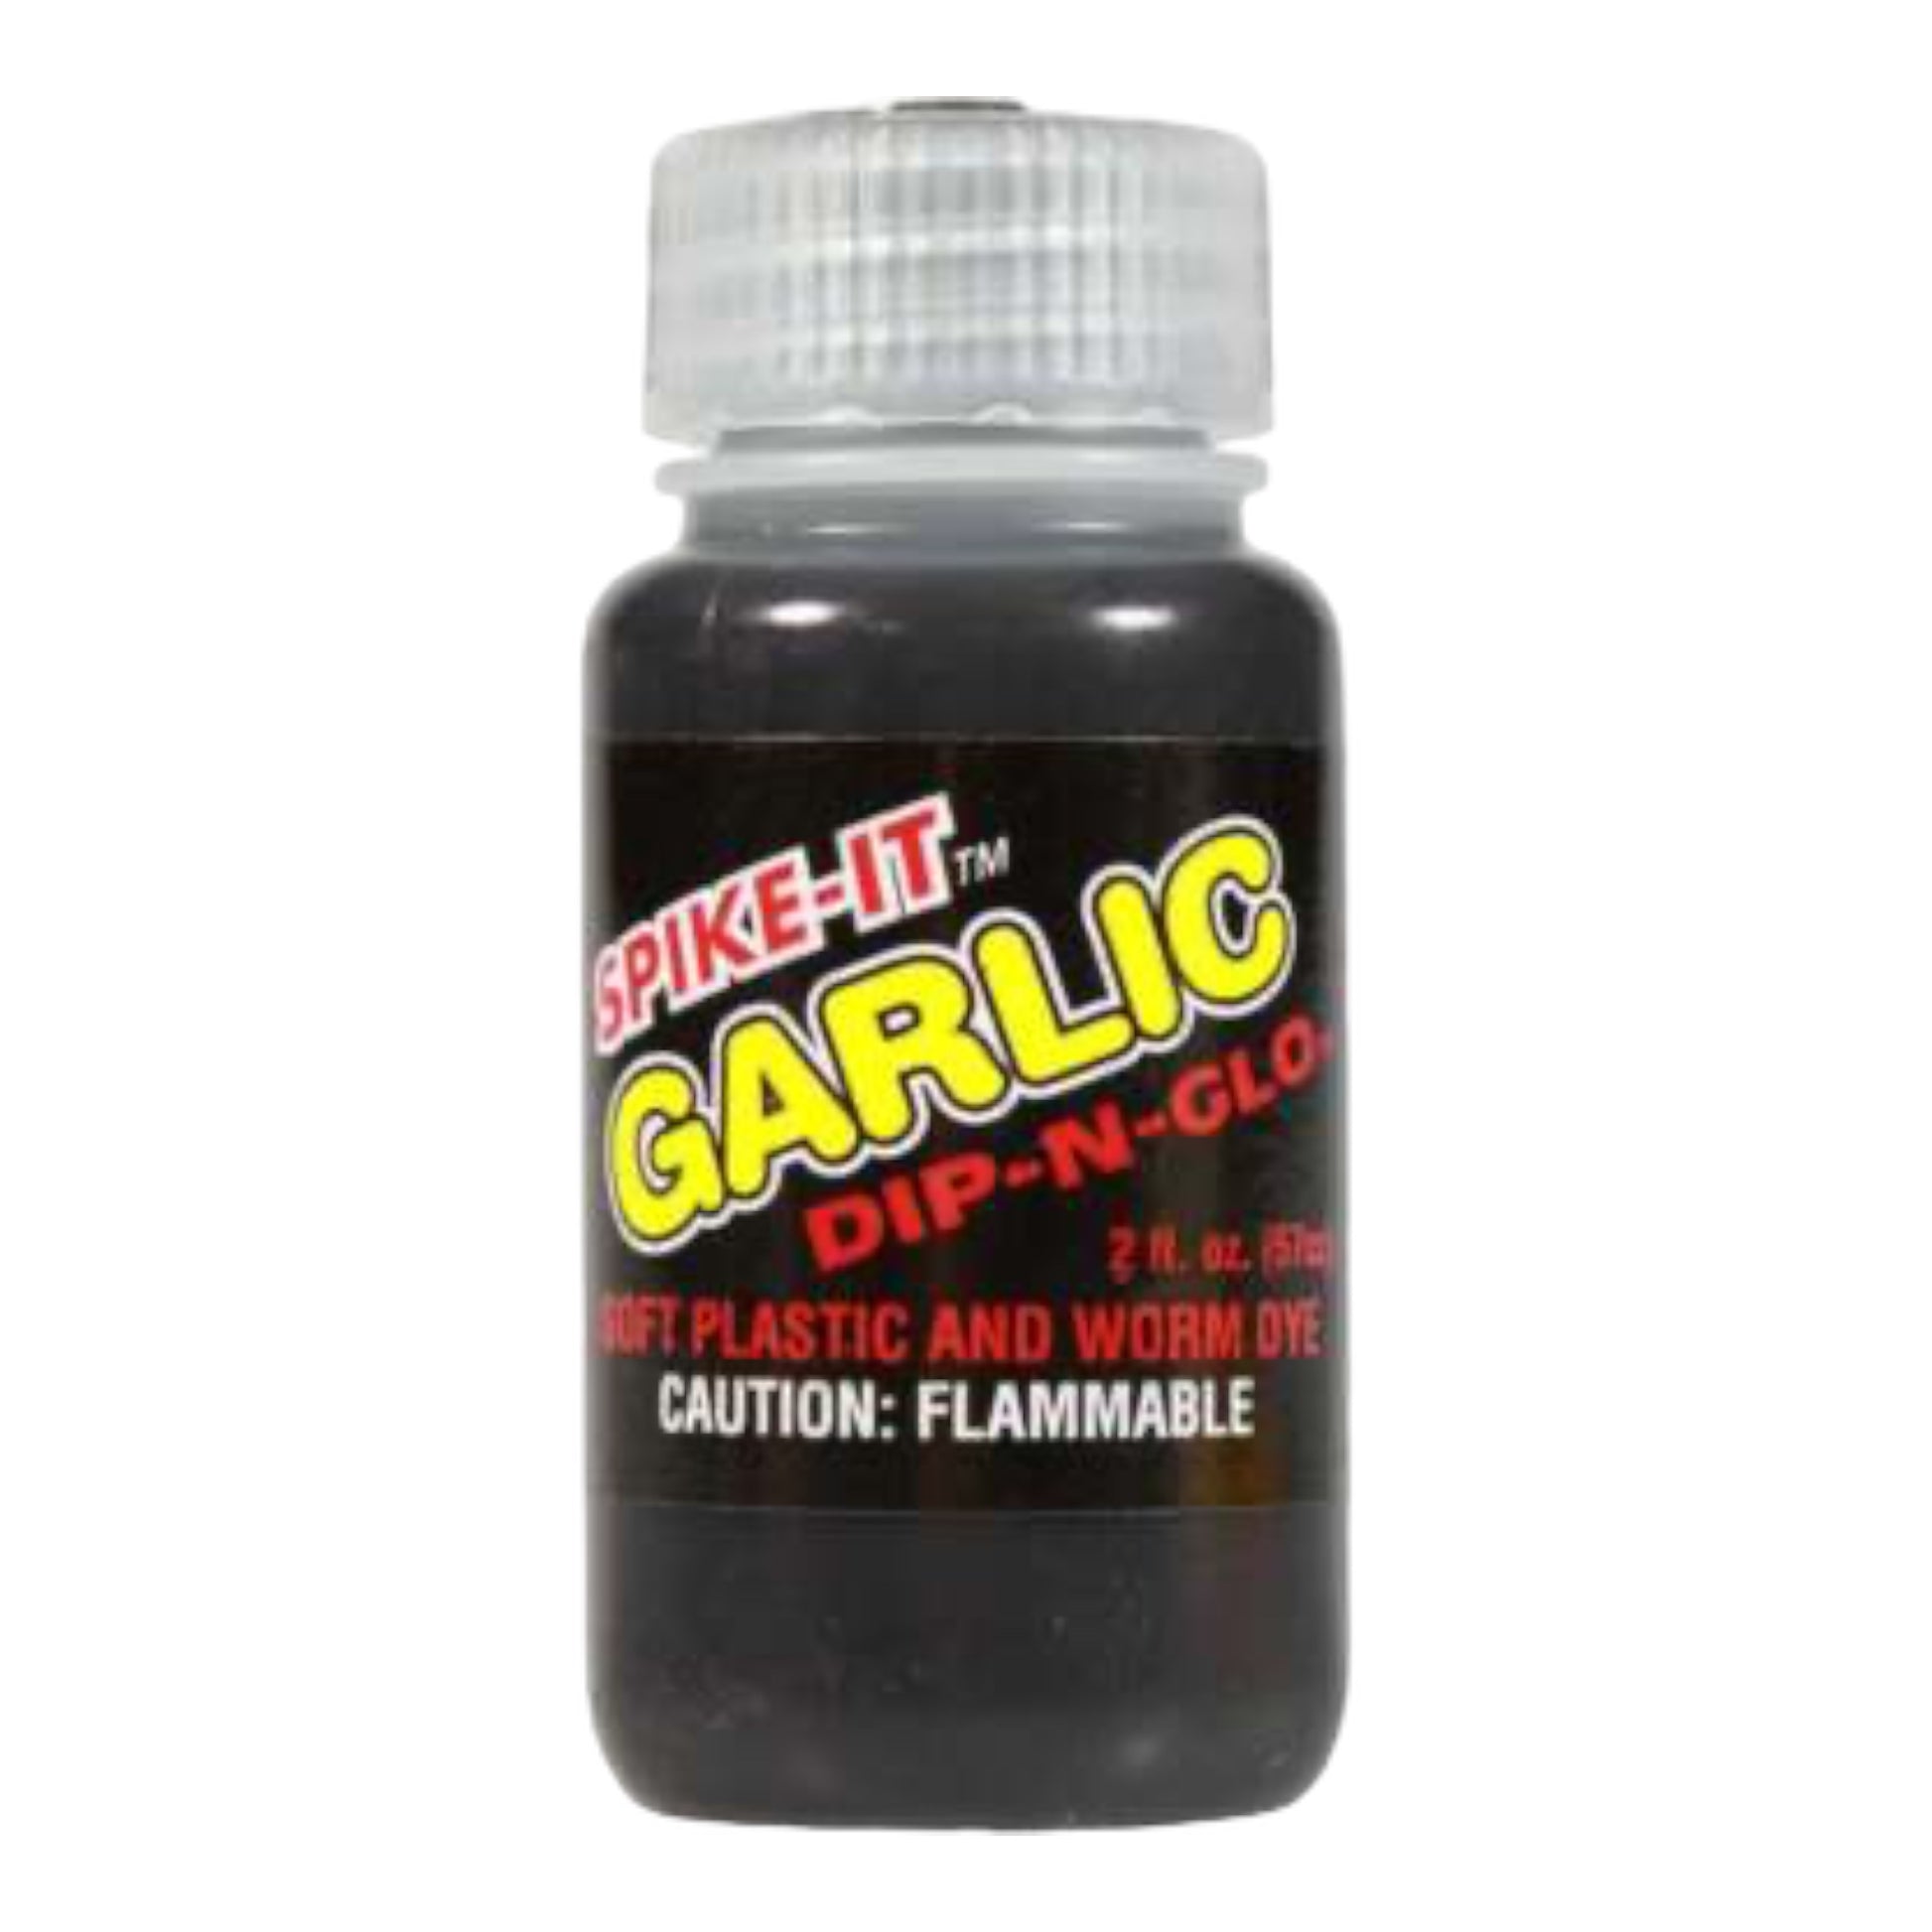 Spike-It Outdoors - Dip-N-Glo™ Garlic